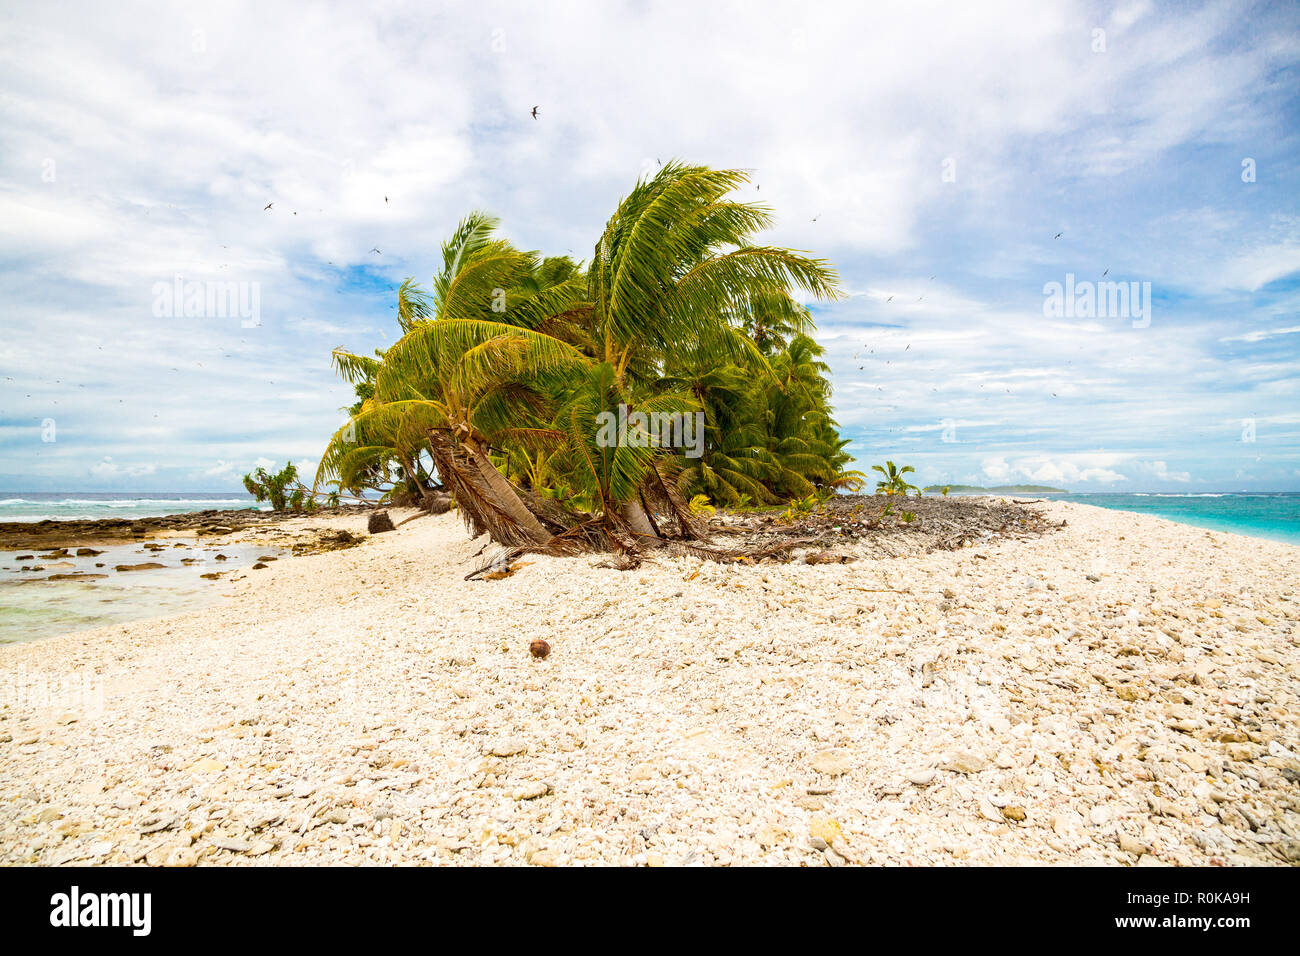 Petite île tropicale à distance (motu) couvertes de palmiers dans l'azure lagon bleu turquoise. Yellow rock beach, grand troupeau d'oiseaux volant au-dessus. Tuvalu. Banque D'Images